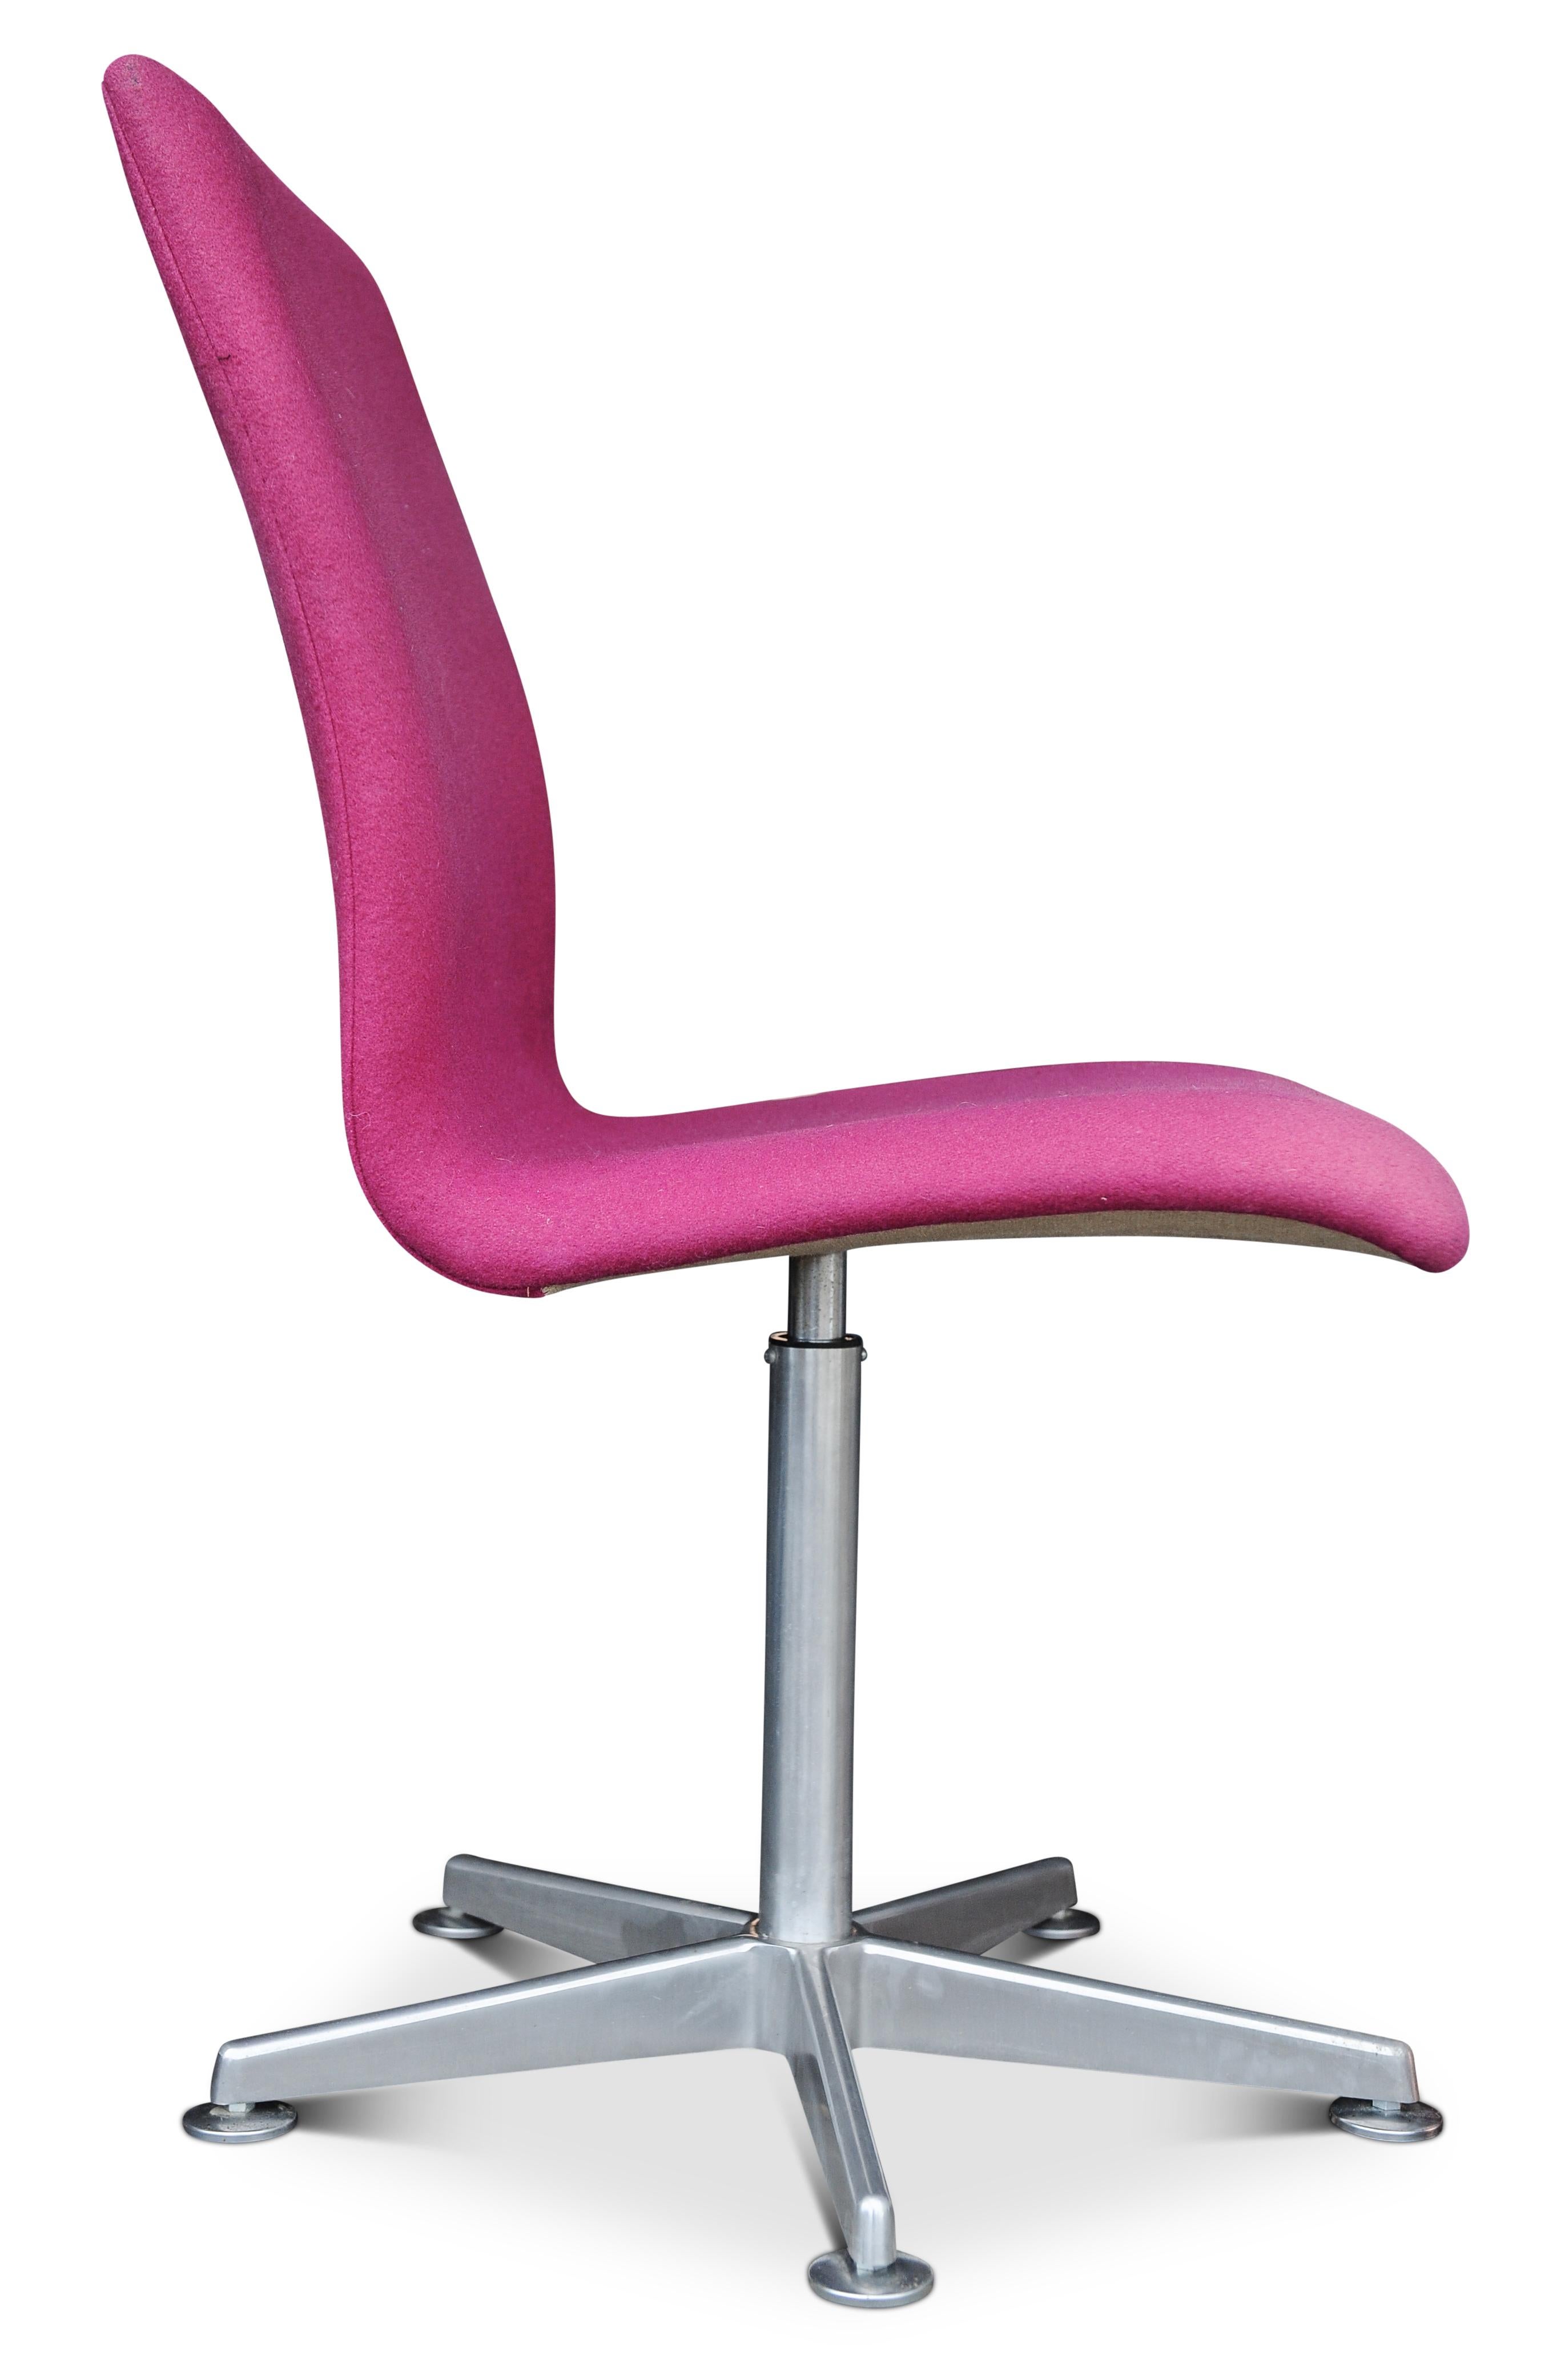 Mid-Century Modern Arne Jacobsen Oxford E1107 Pink Upholstered Swivel Chair for Fritz Hansen For Sale